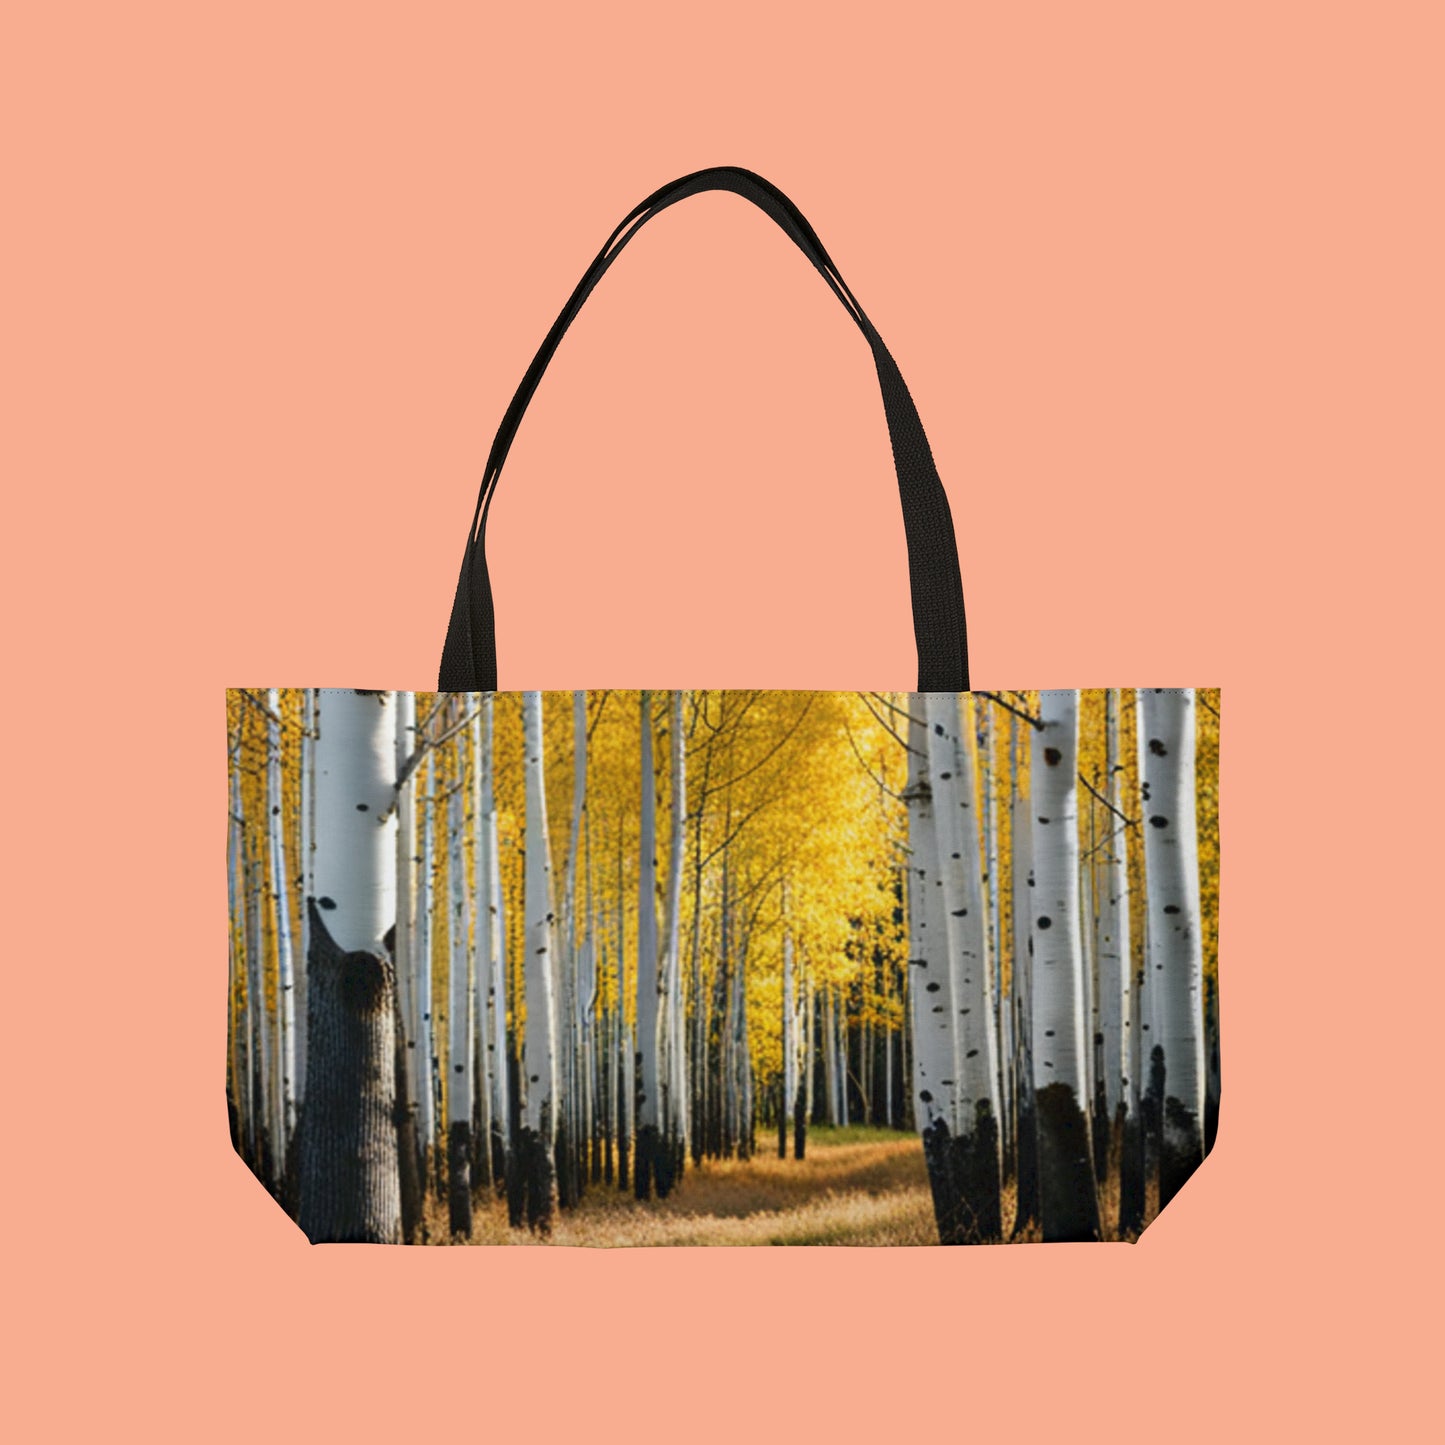 Aspen trees in their splendor on this beautiful Weekender Tote Bag.